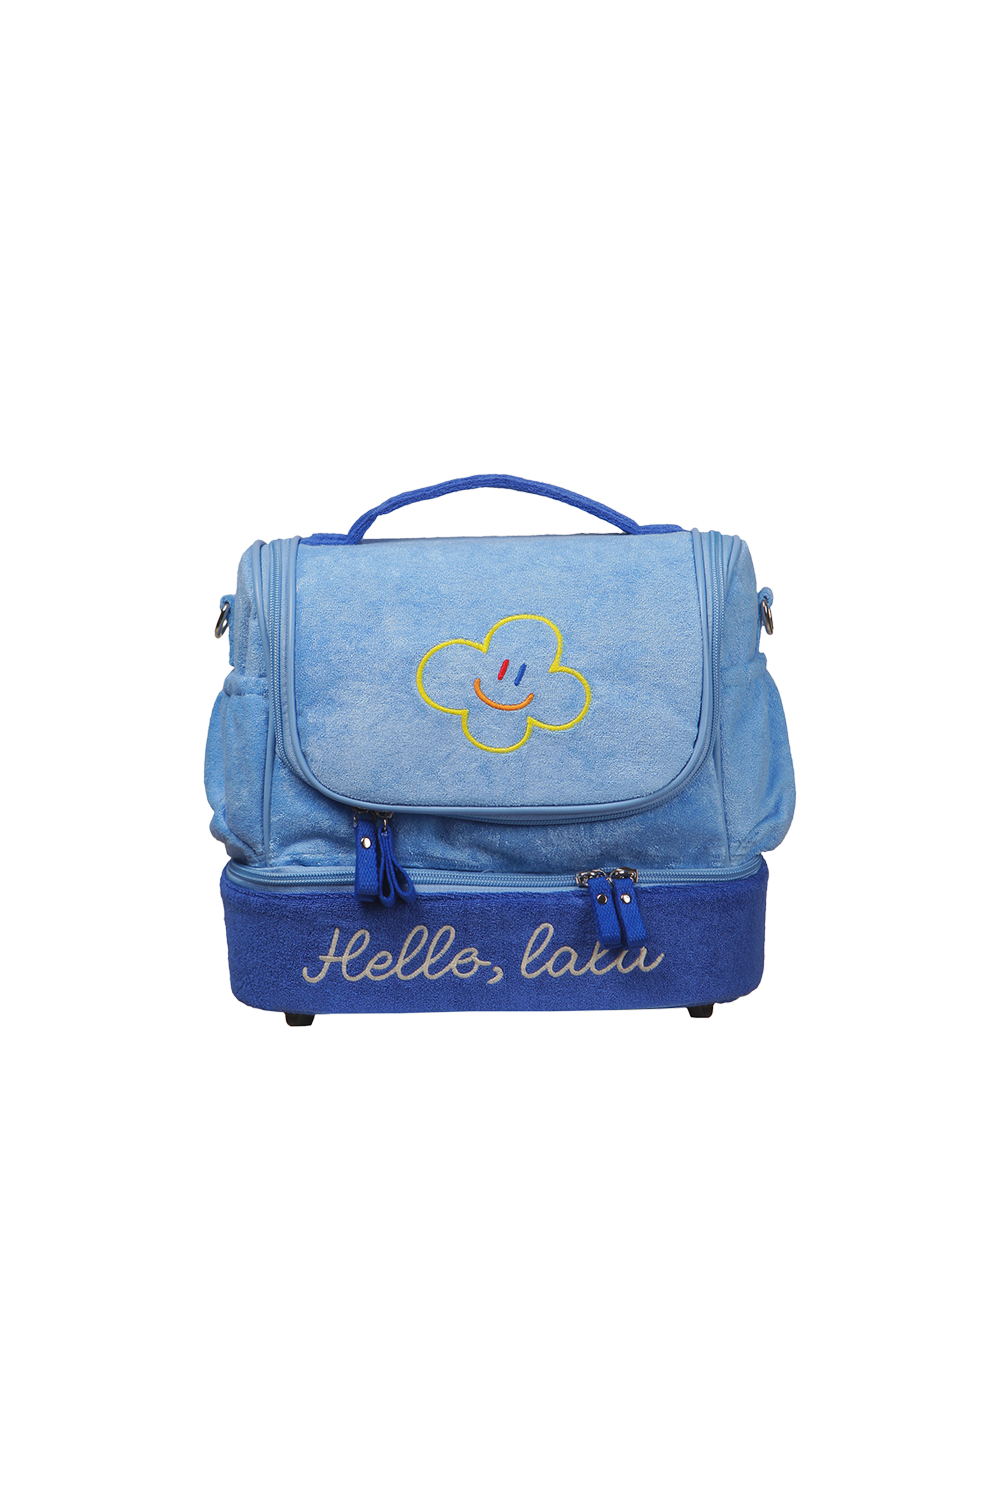 Hello LaLa Multi Cooler Bag [Blue]